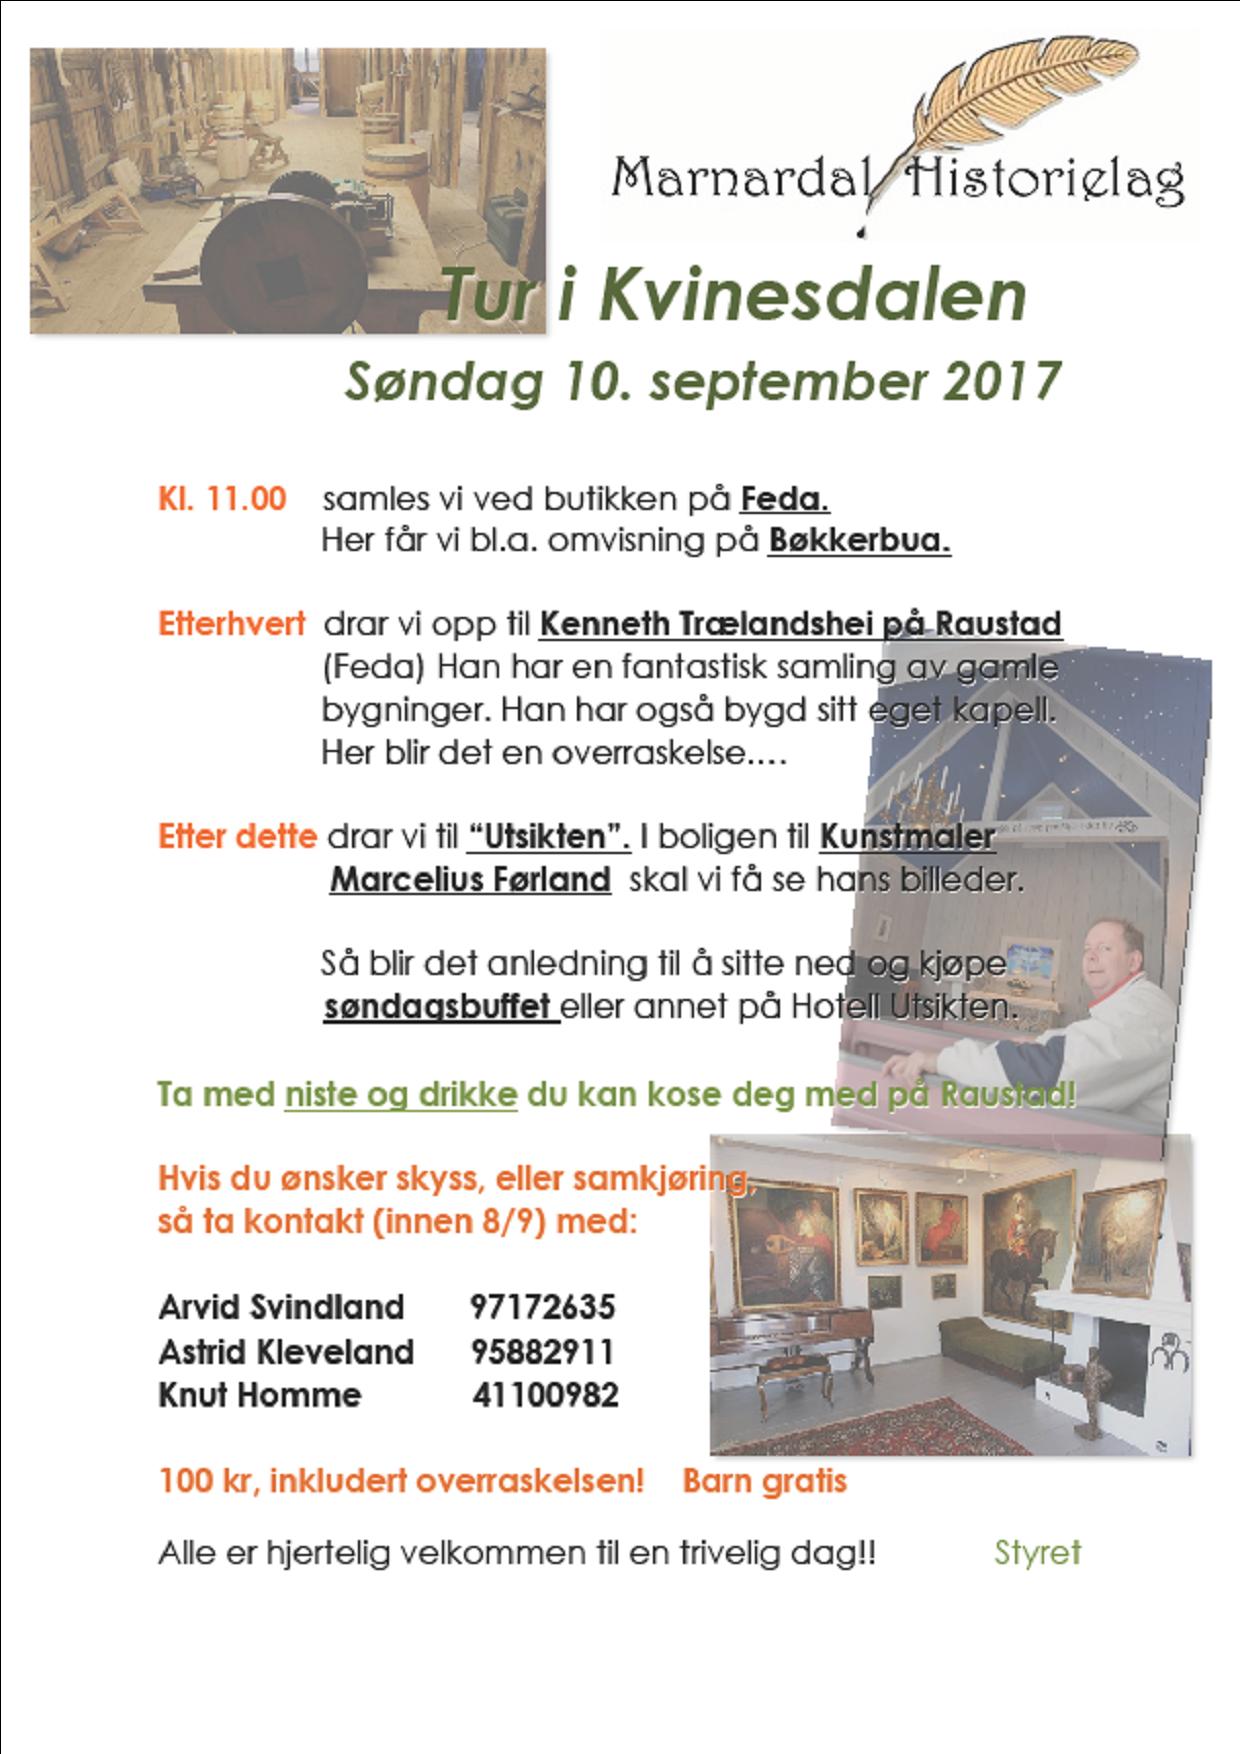 Plakat for tur til Kvinesdalen 10. sept 2017 Marnardal historielag